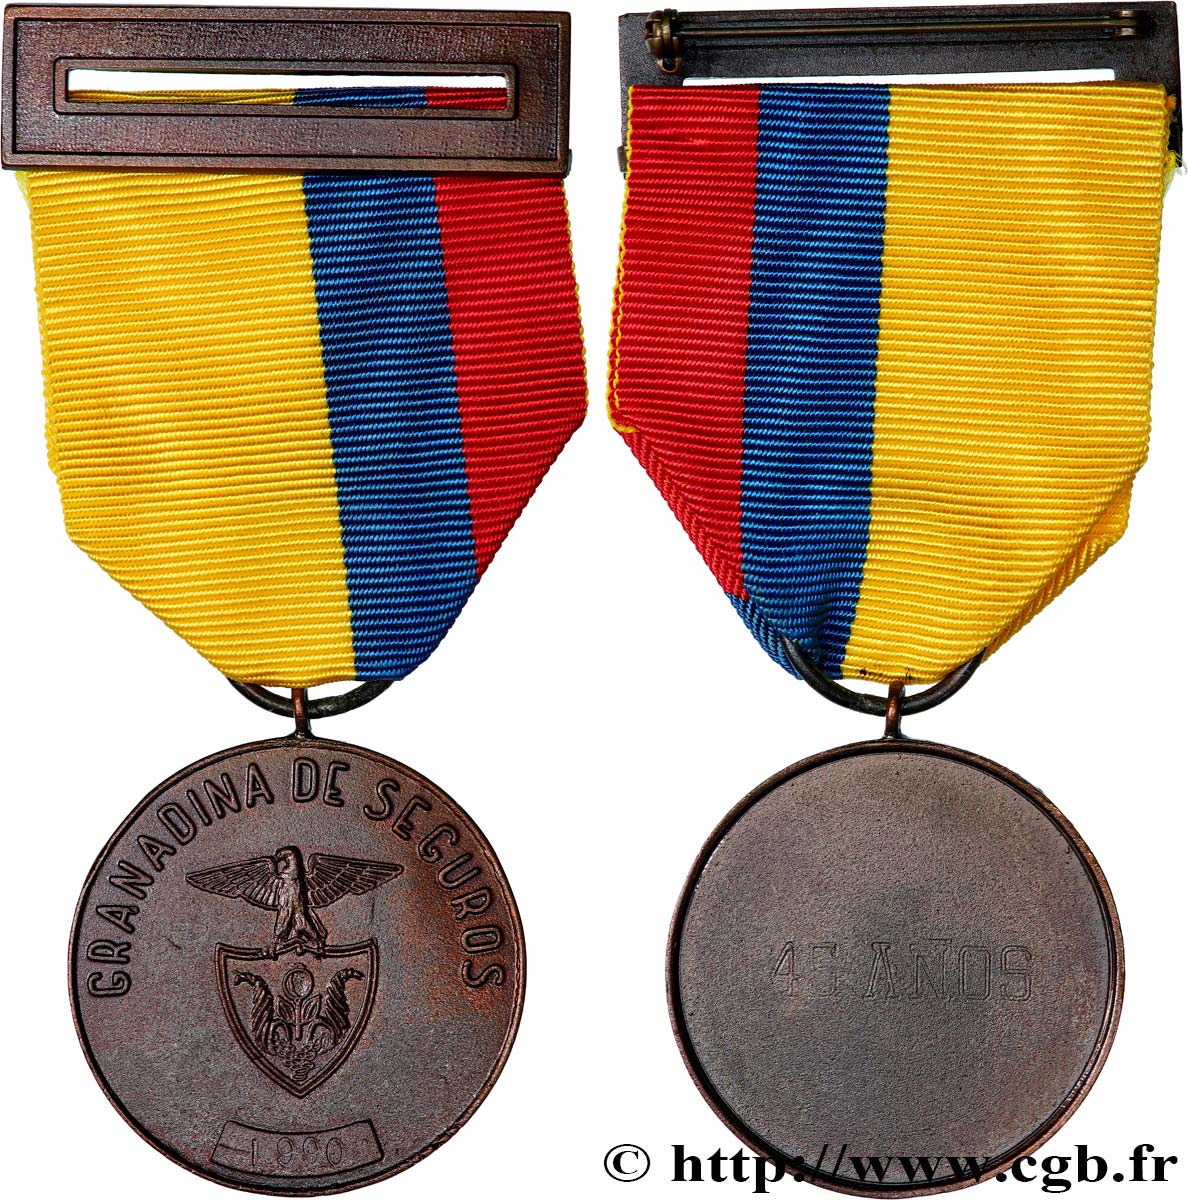 LES ASSURANCES Médaille, Granadina de seguros SPL